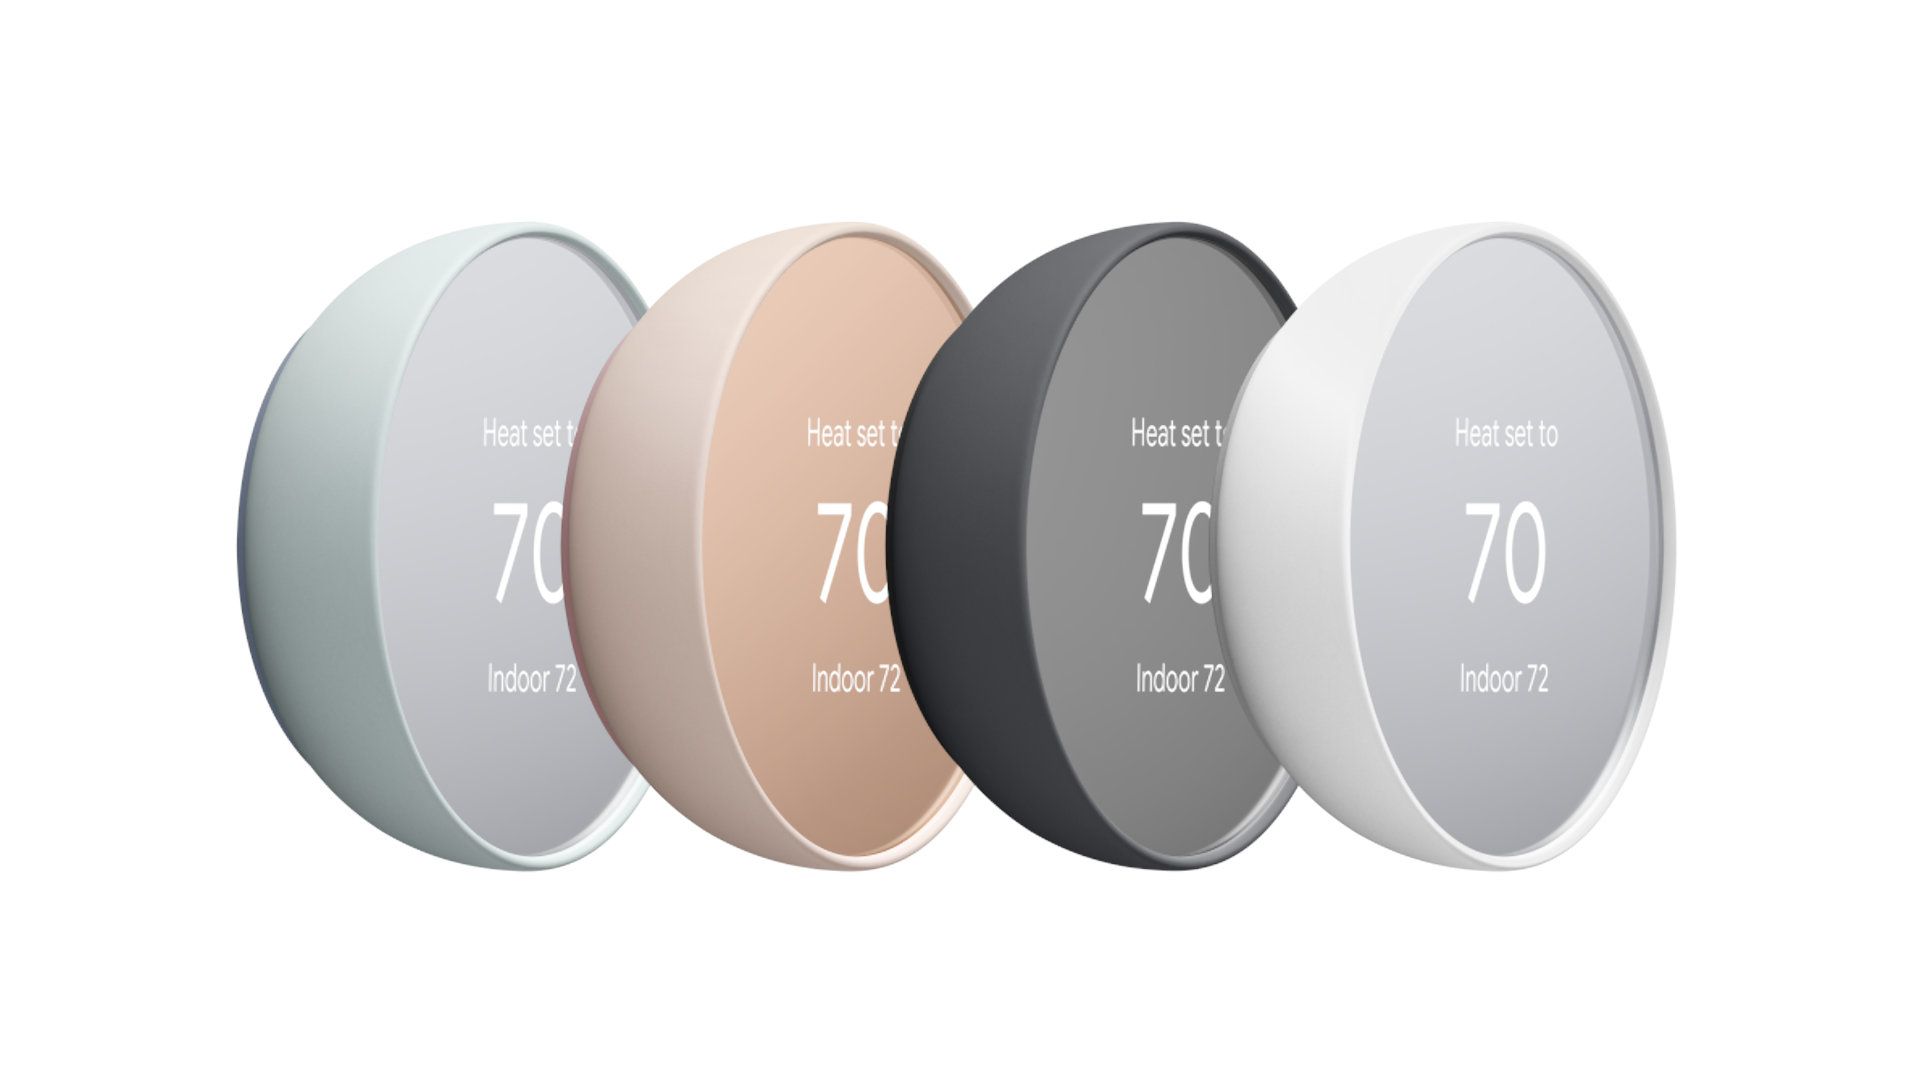 Os termostatos Google Nest têm uma variedade de cores com tonalidades de tela e corpo.